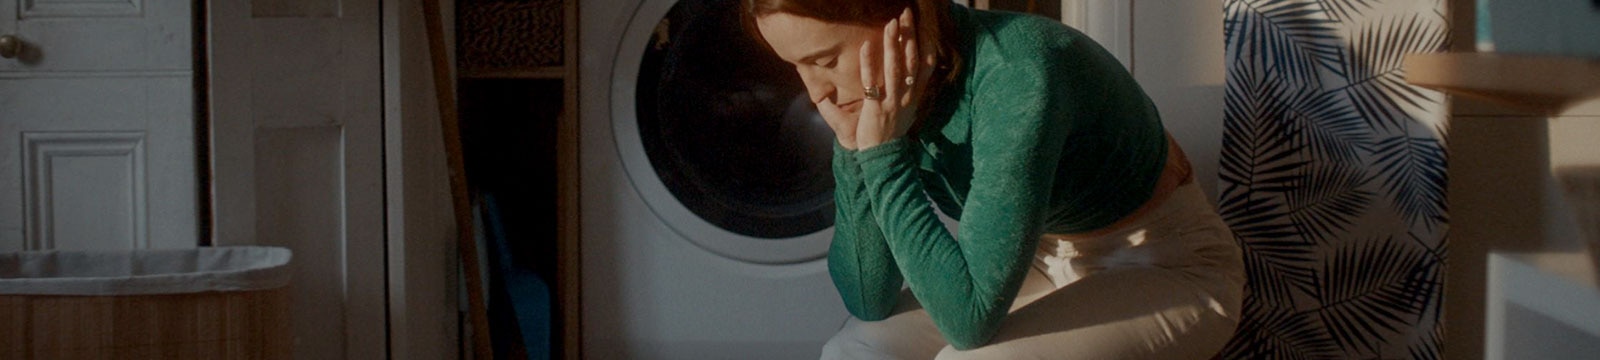 Pārgurusi sieviete viena pati sēž veļas mazgātavā